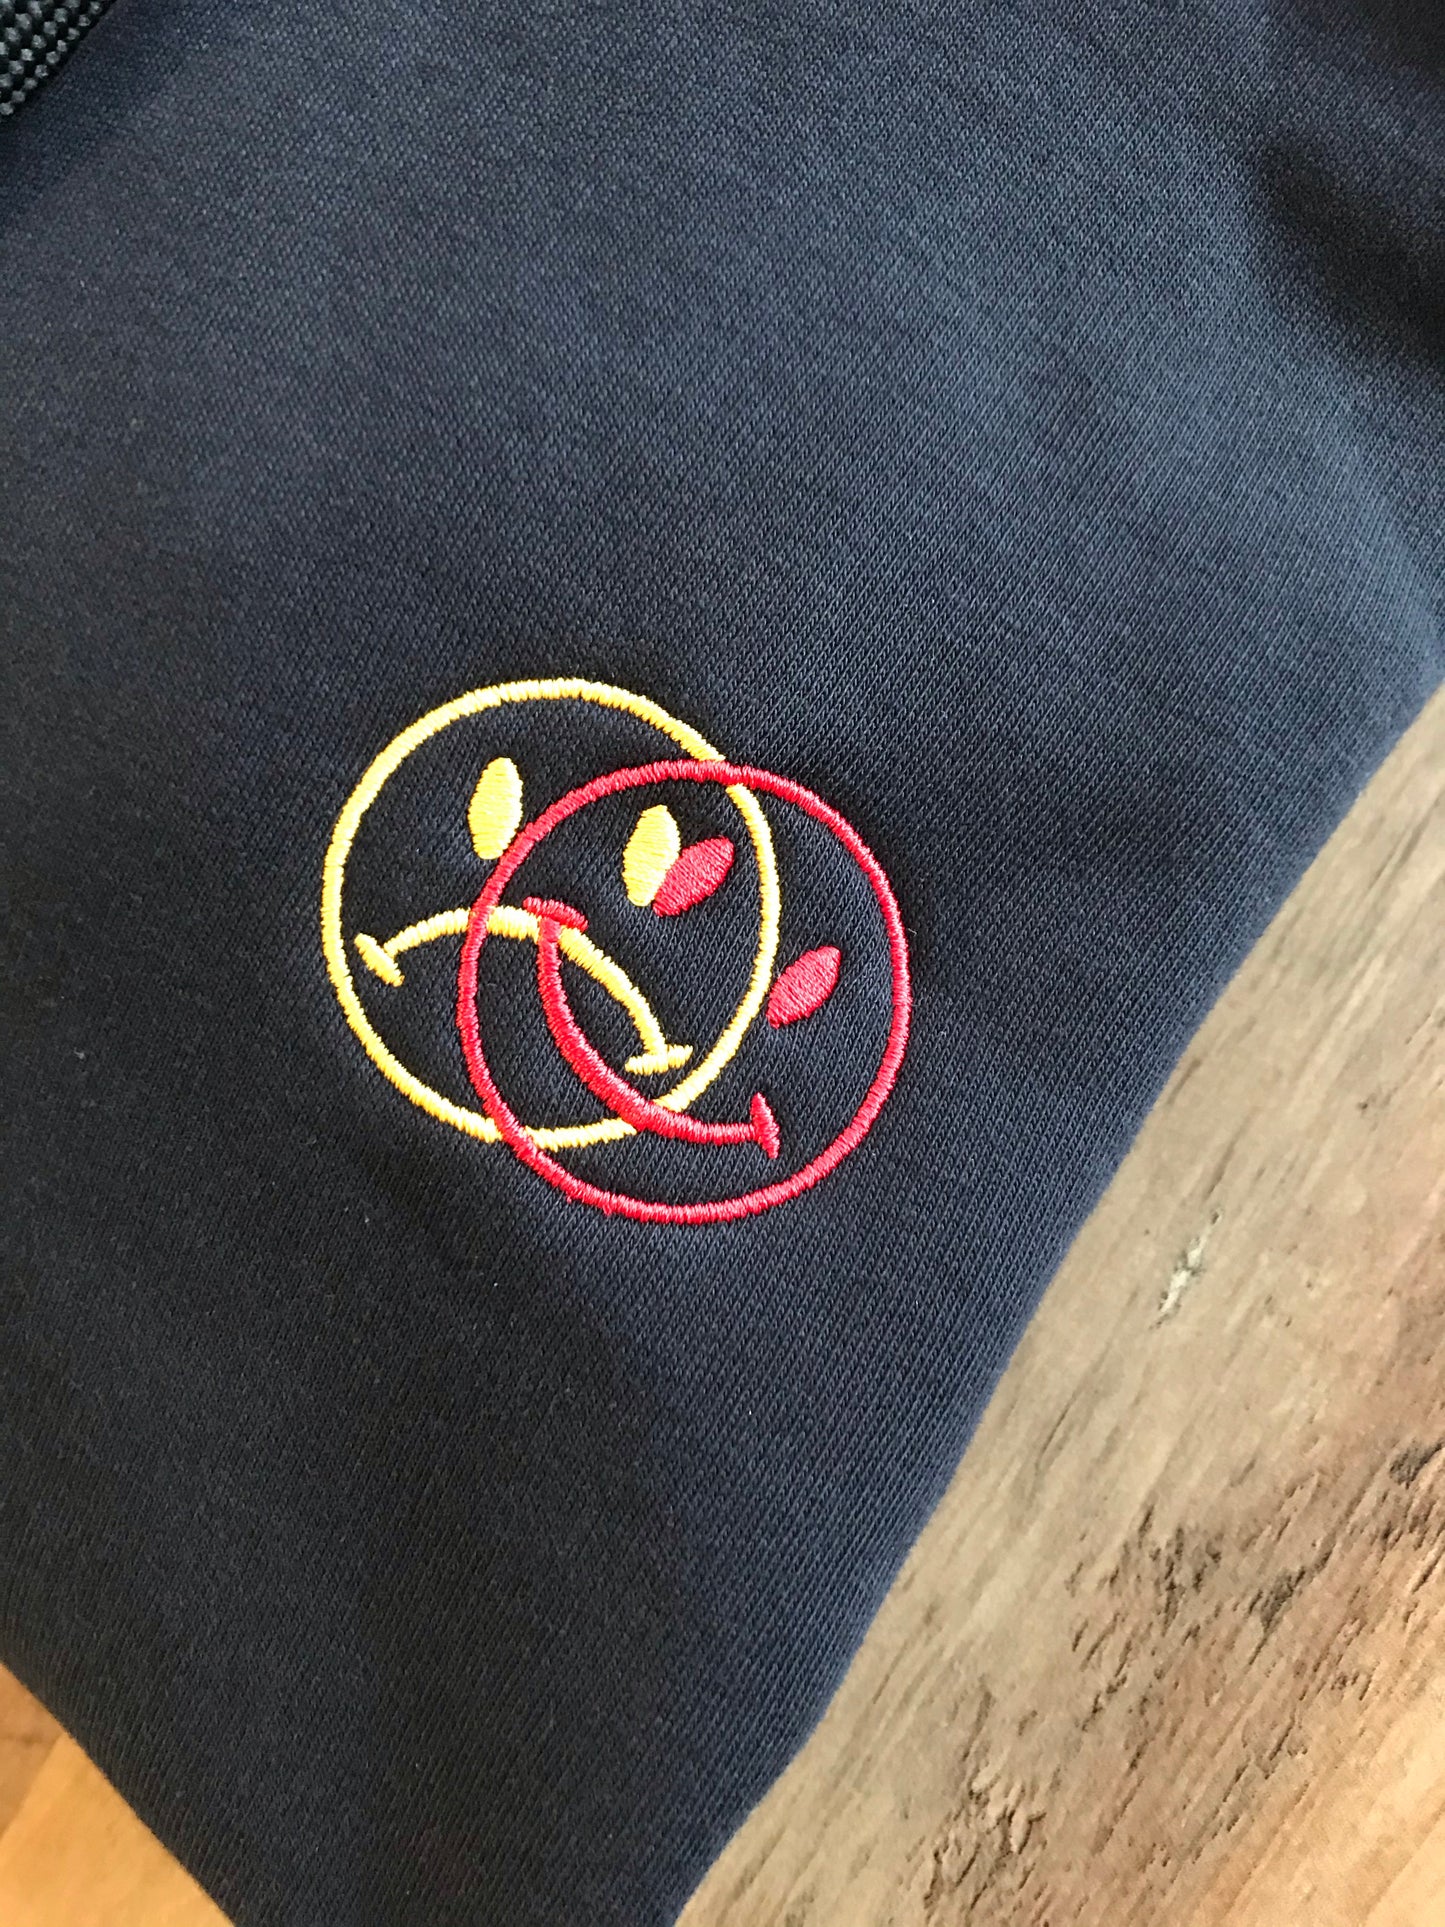 KÄNSLOR - Embroidered Premium eco hoodie